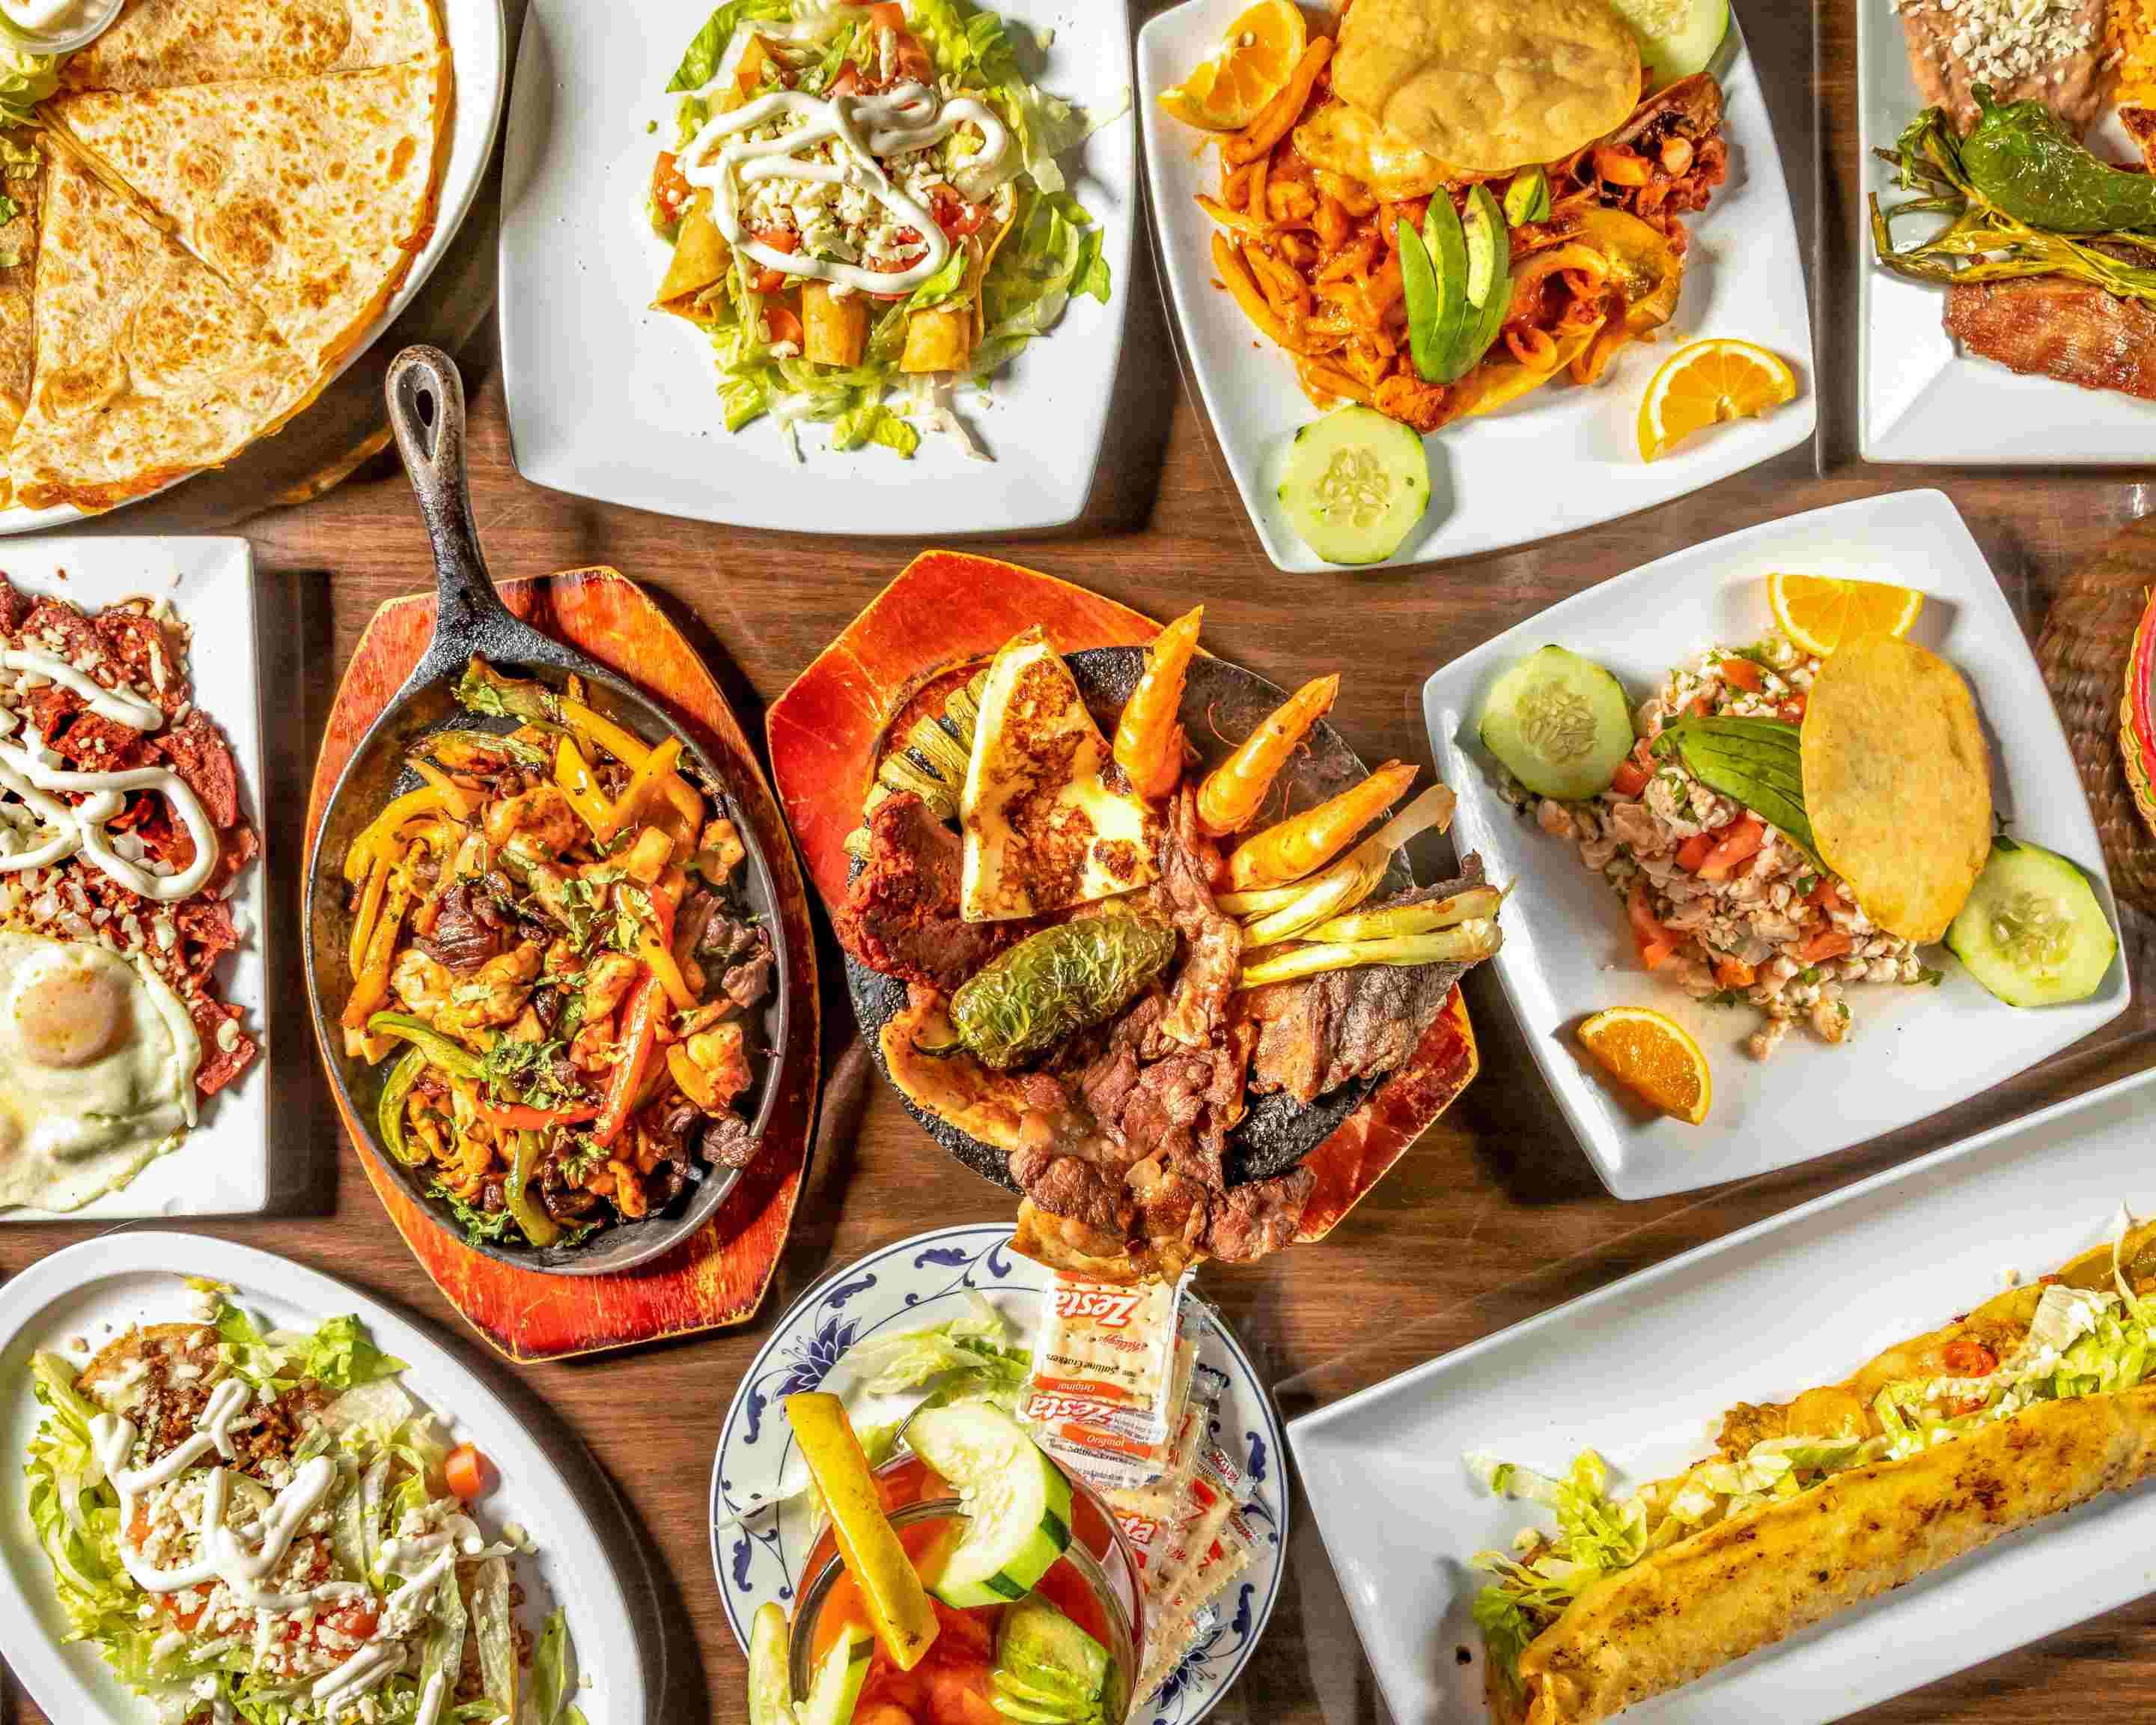 Order Hector's Tacos Y Mariscos Menu Delivery【Menu & Prices】| Costa Mesa |  Uber Eats